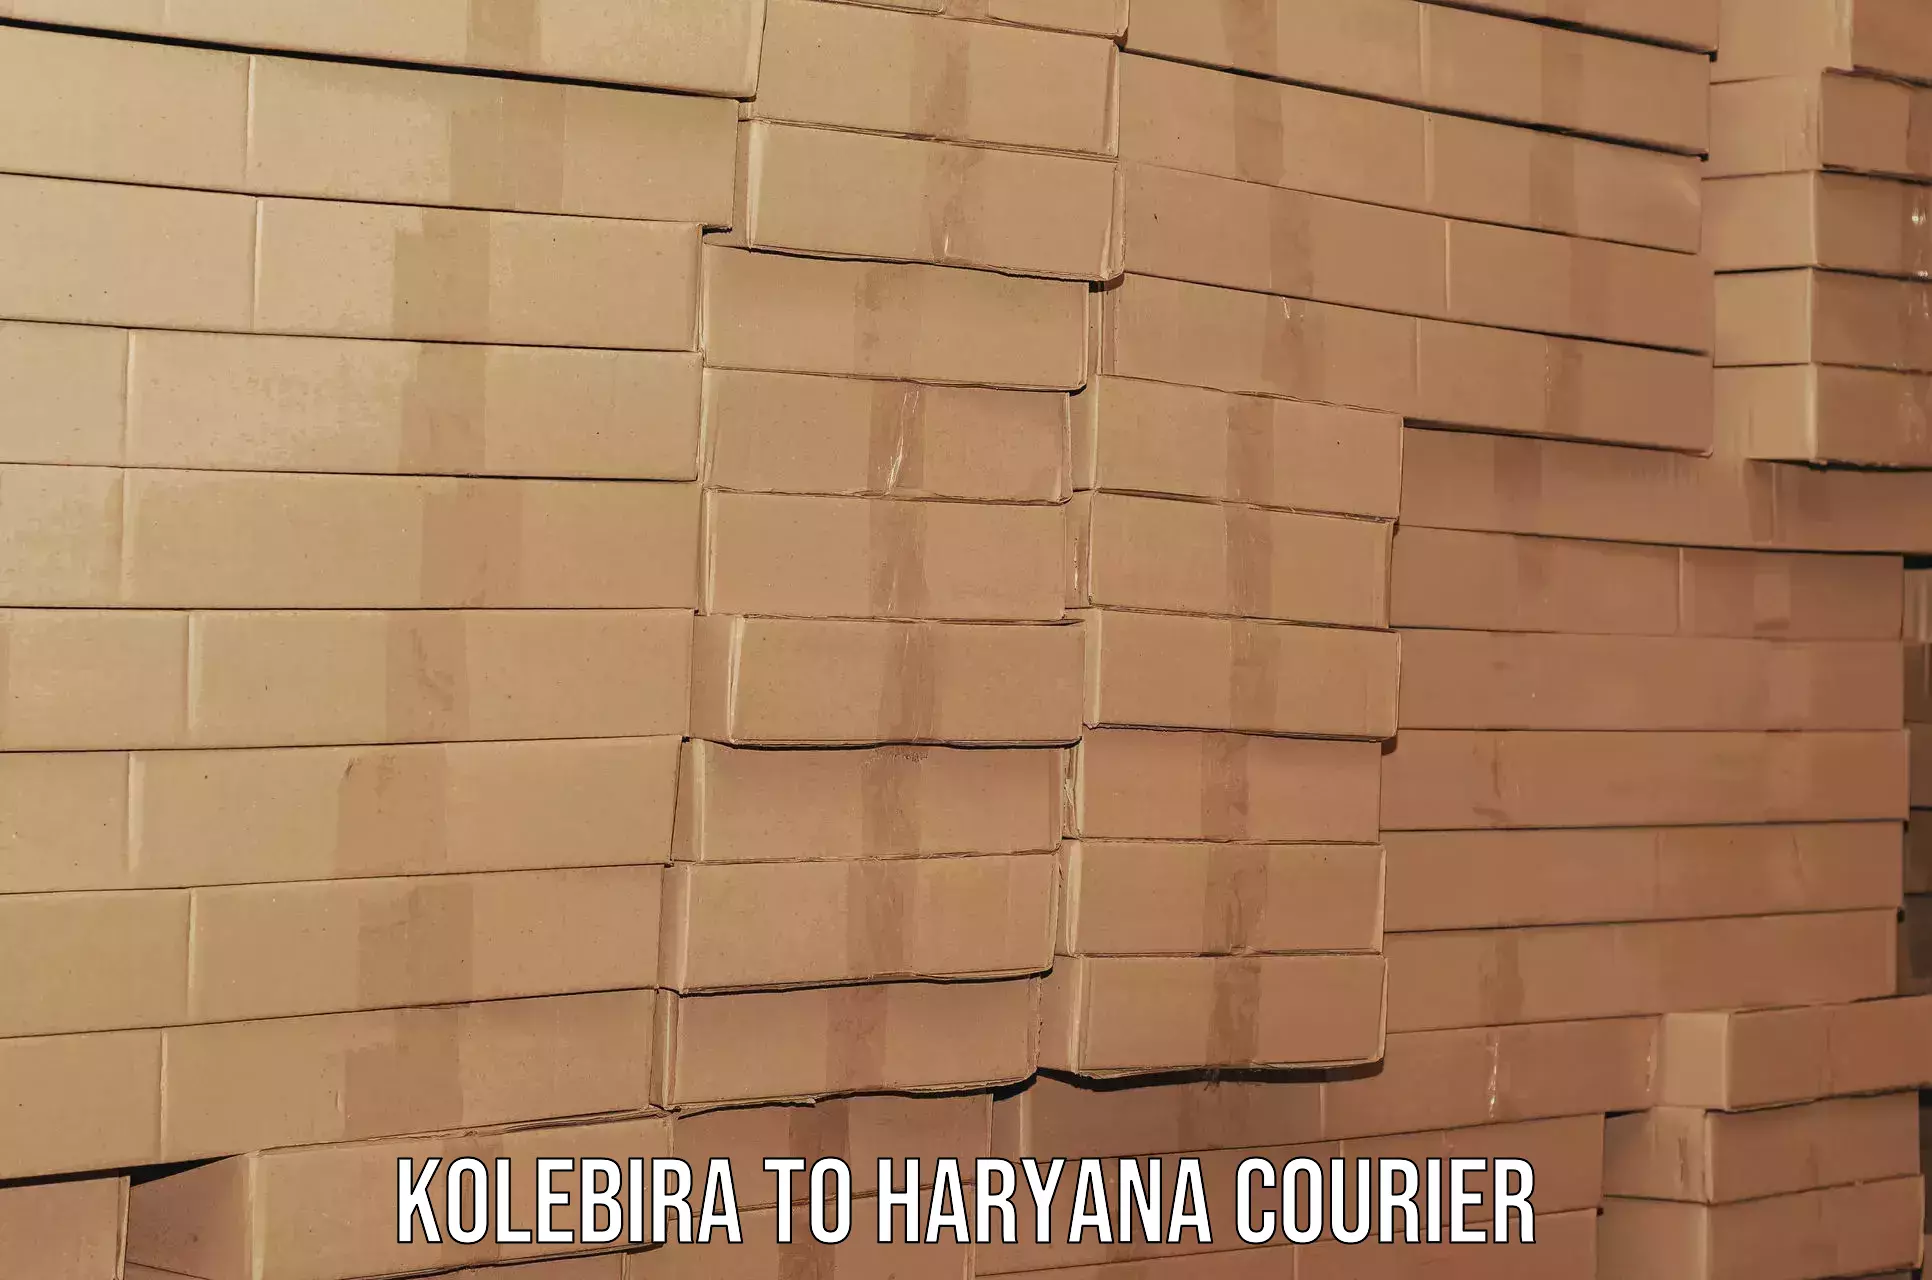 Local furniture movers in Kolebira to Bilaspur Haryana